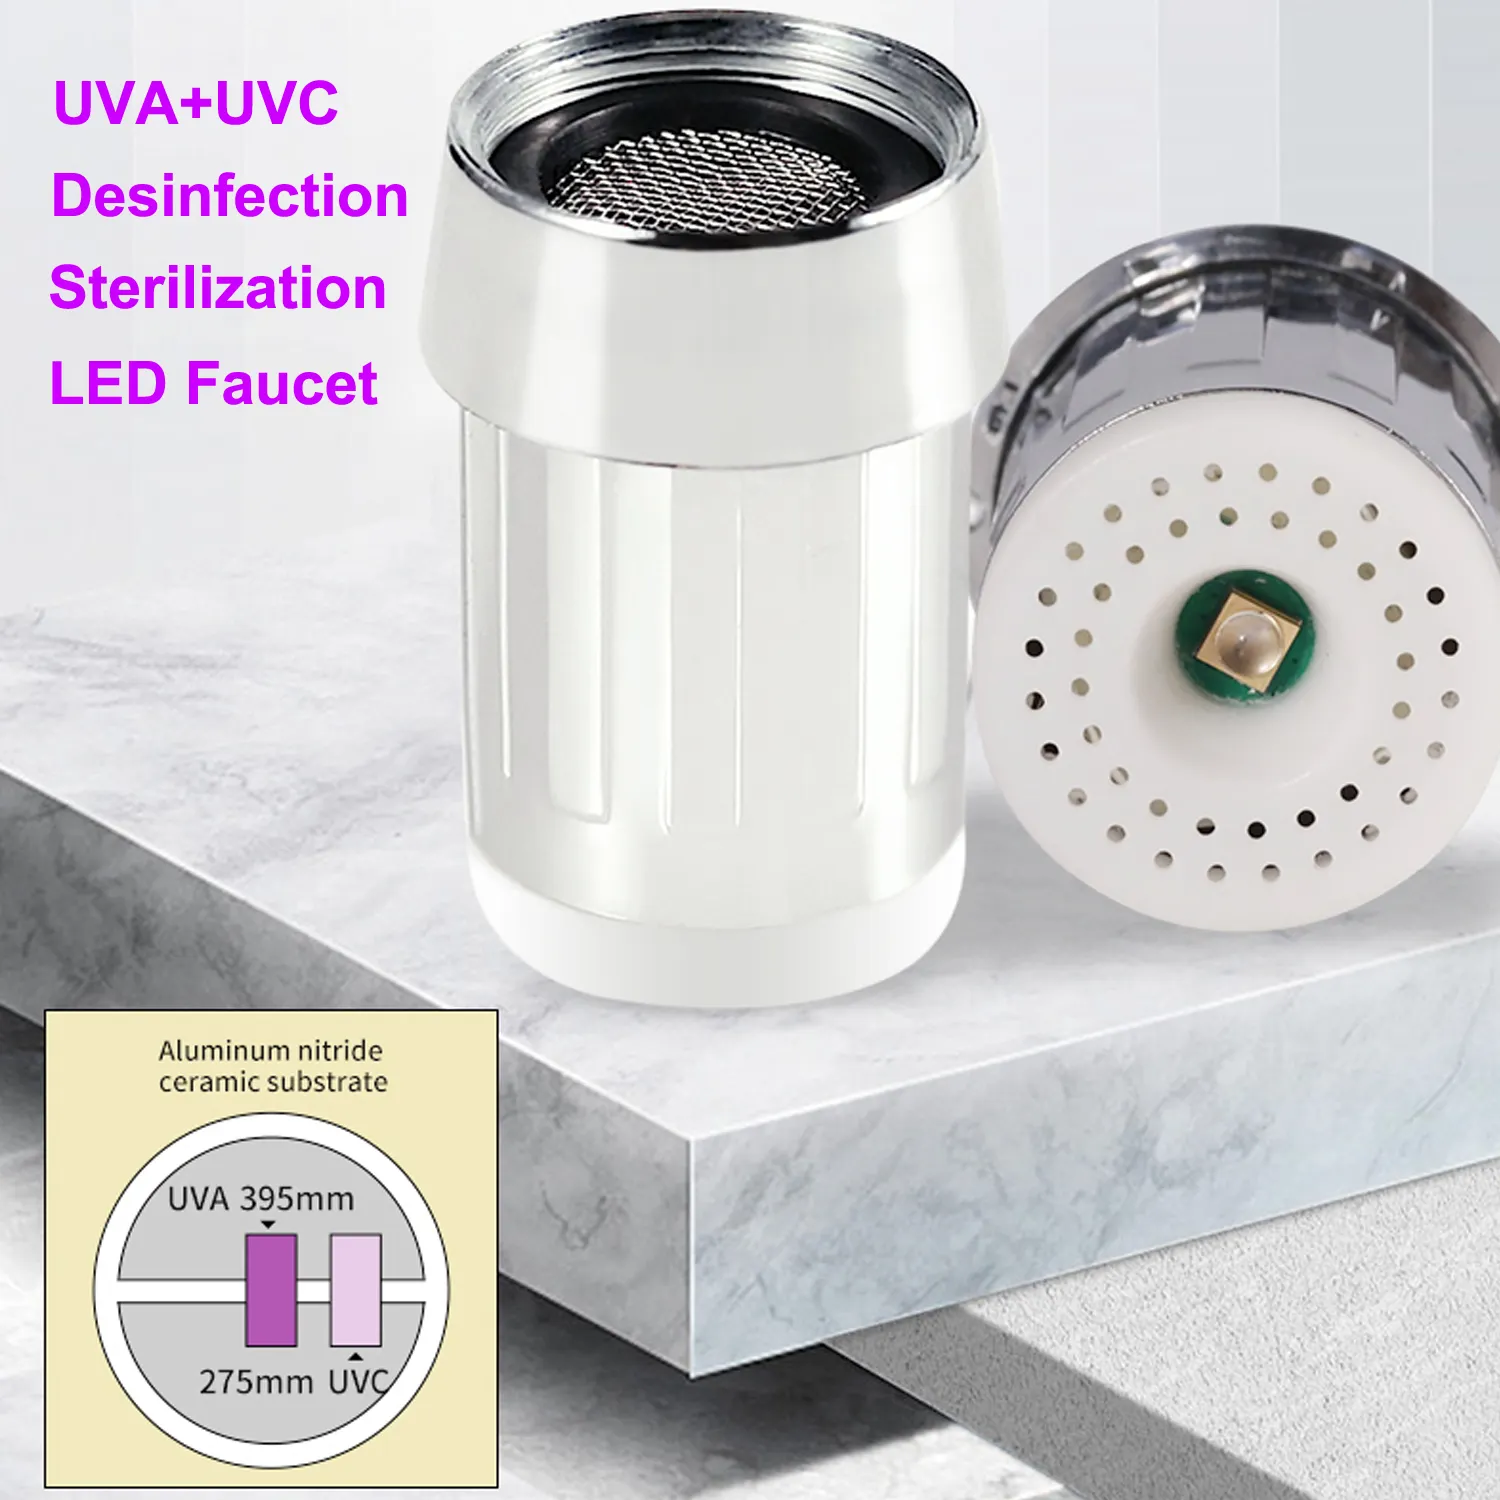 Arastar UVA UVC dezenfeksiyon sterilizasyon evrensel mutfak musluklar aşağı çekin püskürtücü banyo musluk aksesuarları